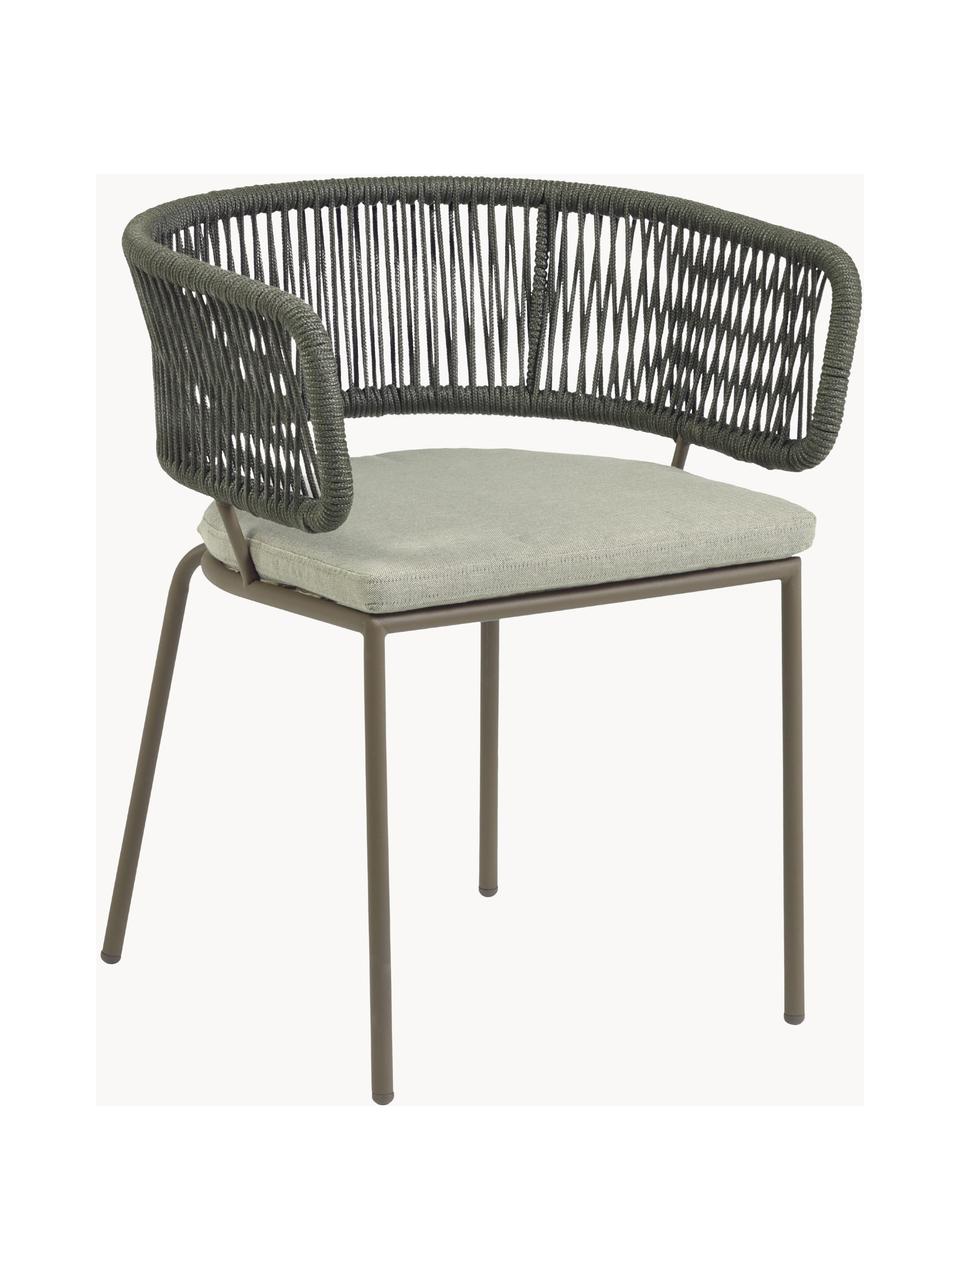 Krzesło ogrodowe z plecionym sznurkiem Nadin, Stelaż: metal ocynkowany i lakier, Tapicerka: poliester, Jasnobeżowa tkanina, oliwkowy zielony, S 58 x G 48 cm